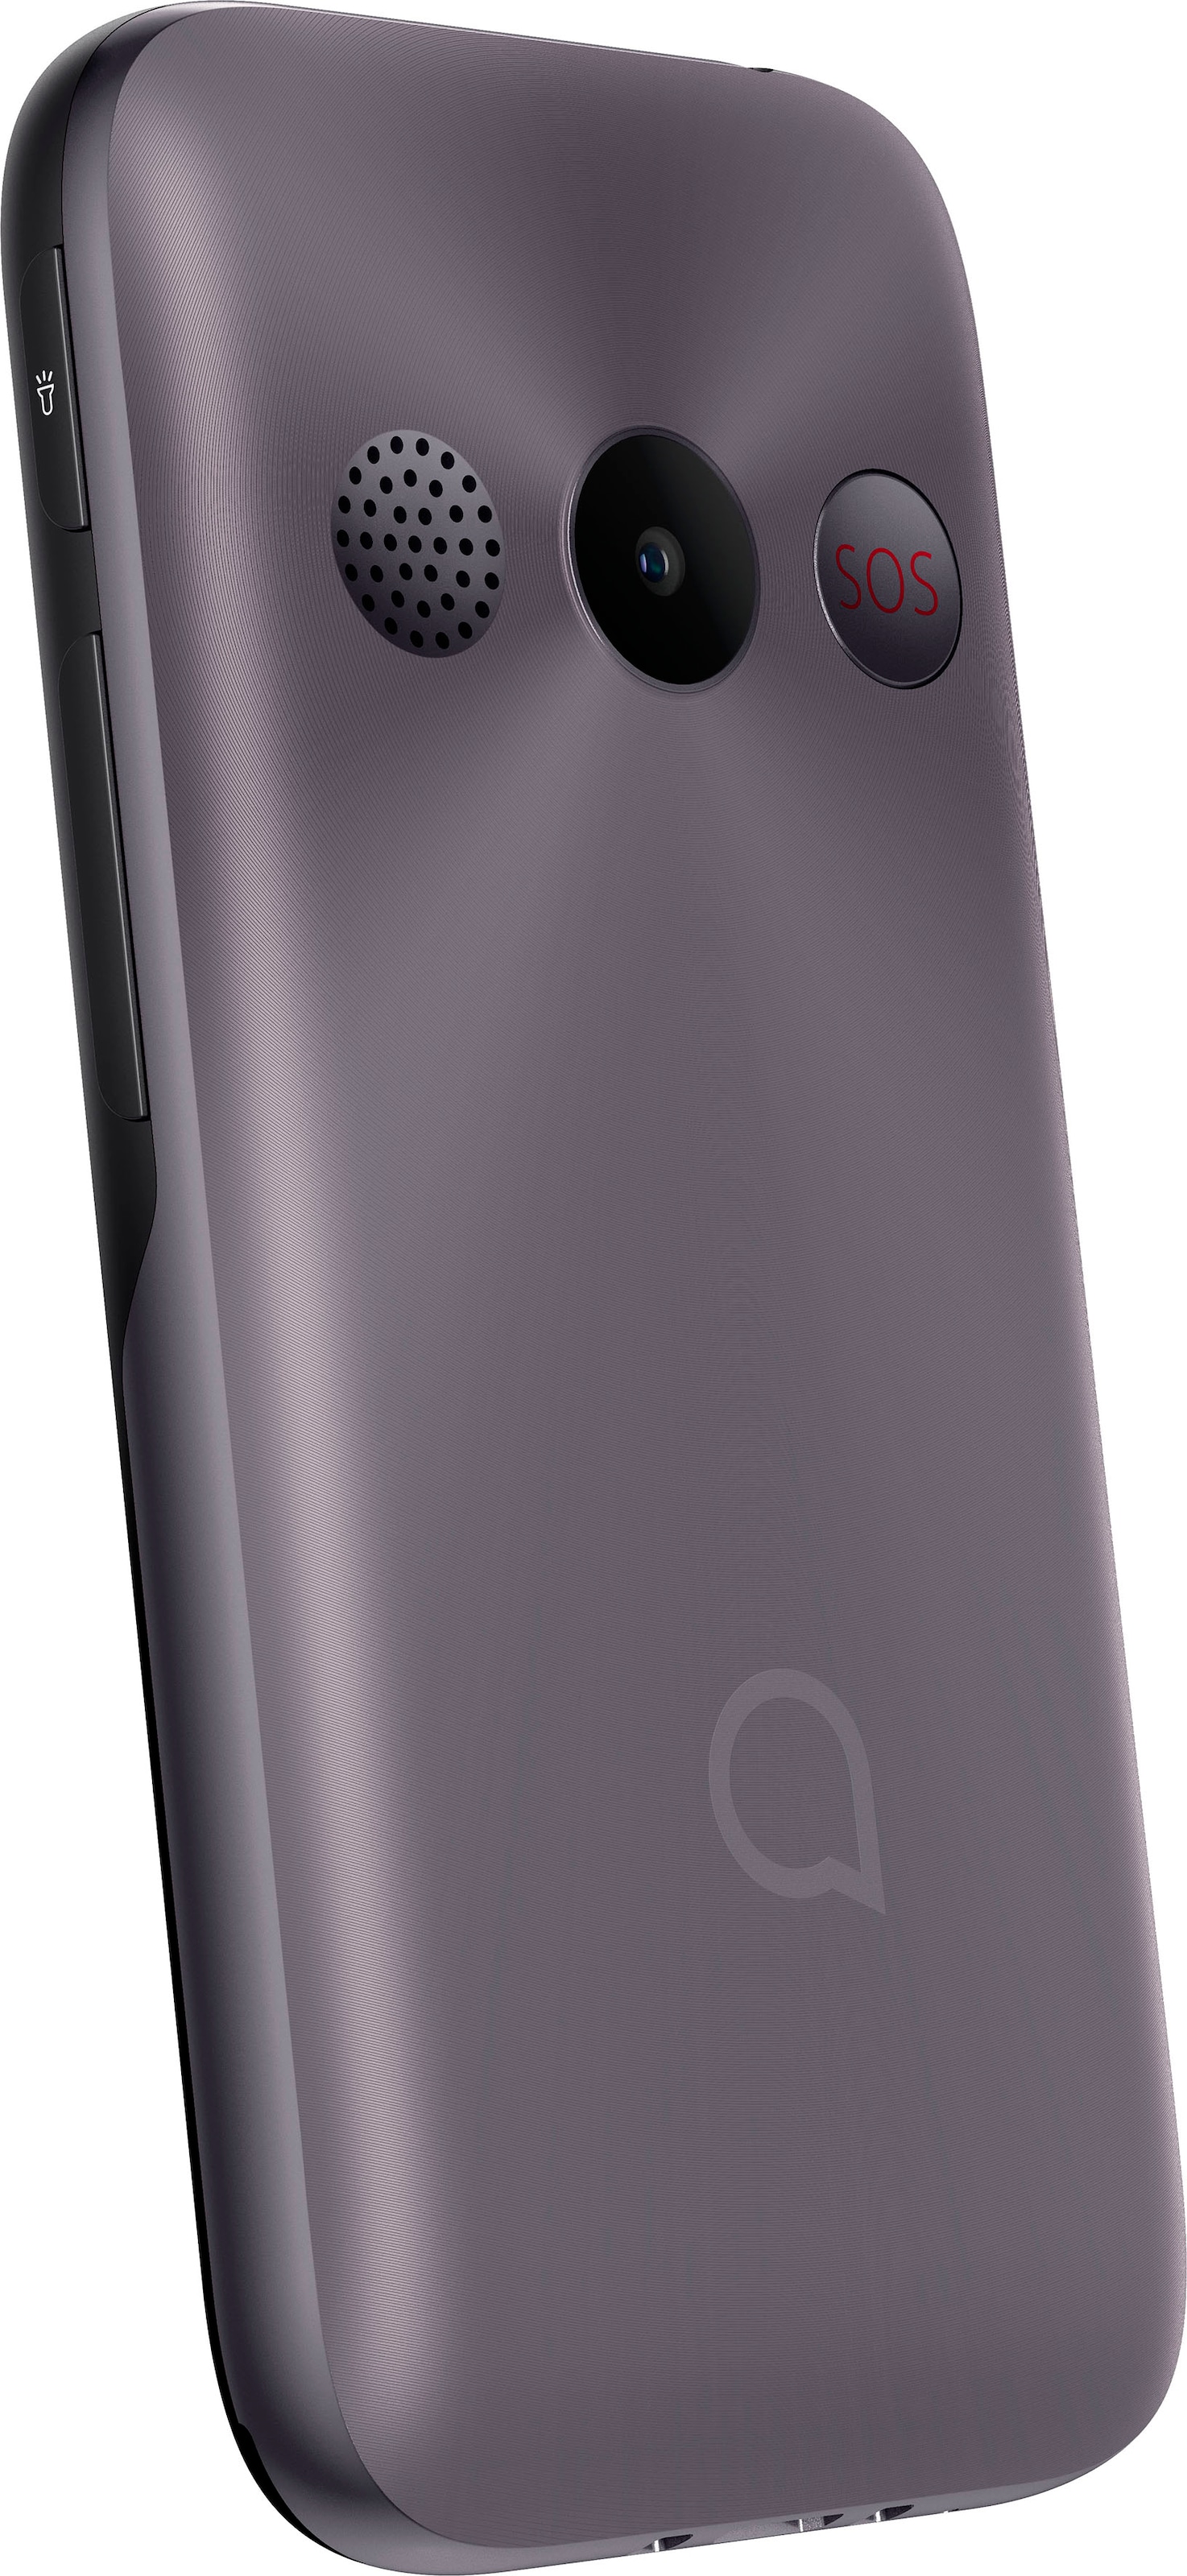 Alcatel Handy »2020«, Metallic Gray, 6,10 auf Zoll kaufen cm/2,4 Rechnung